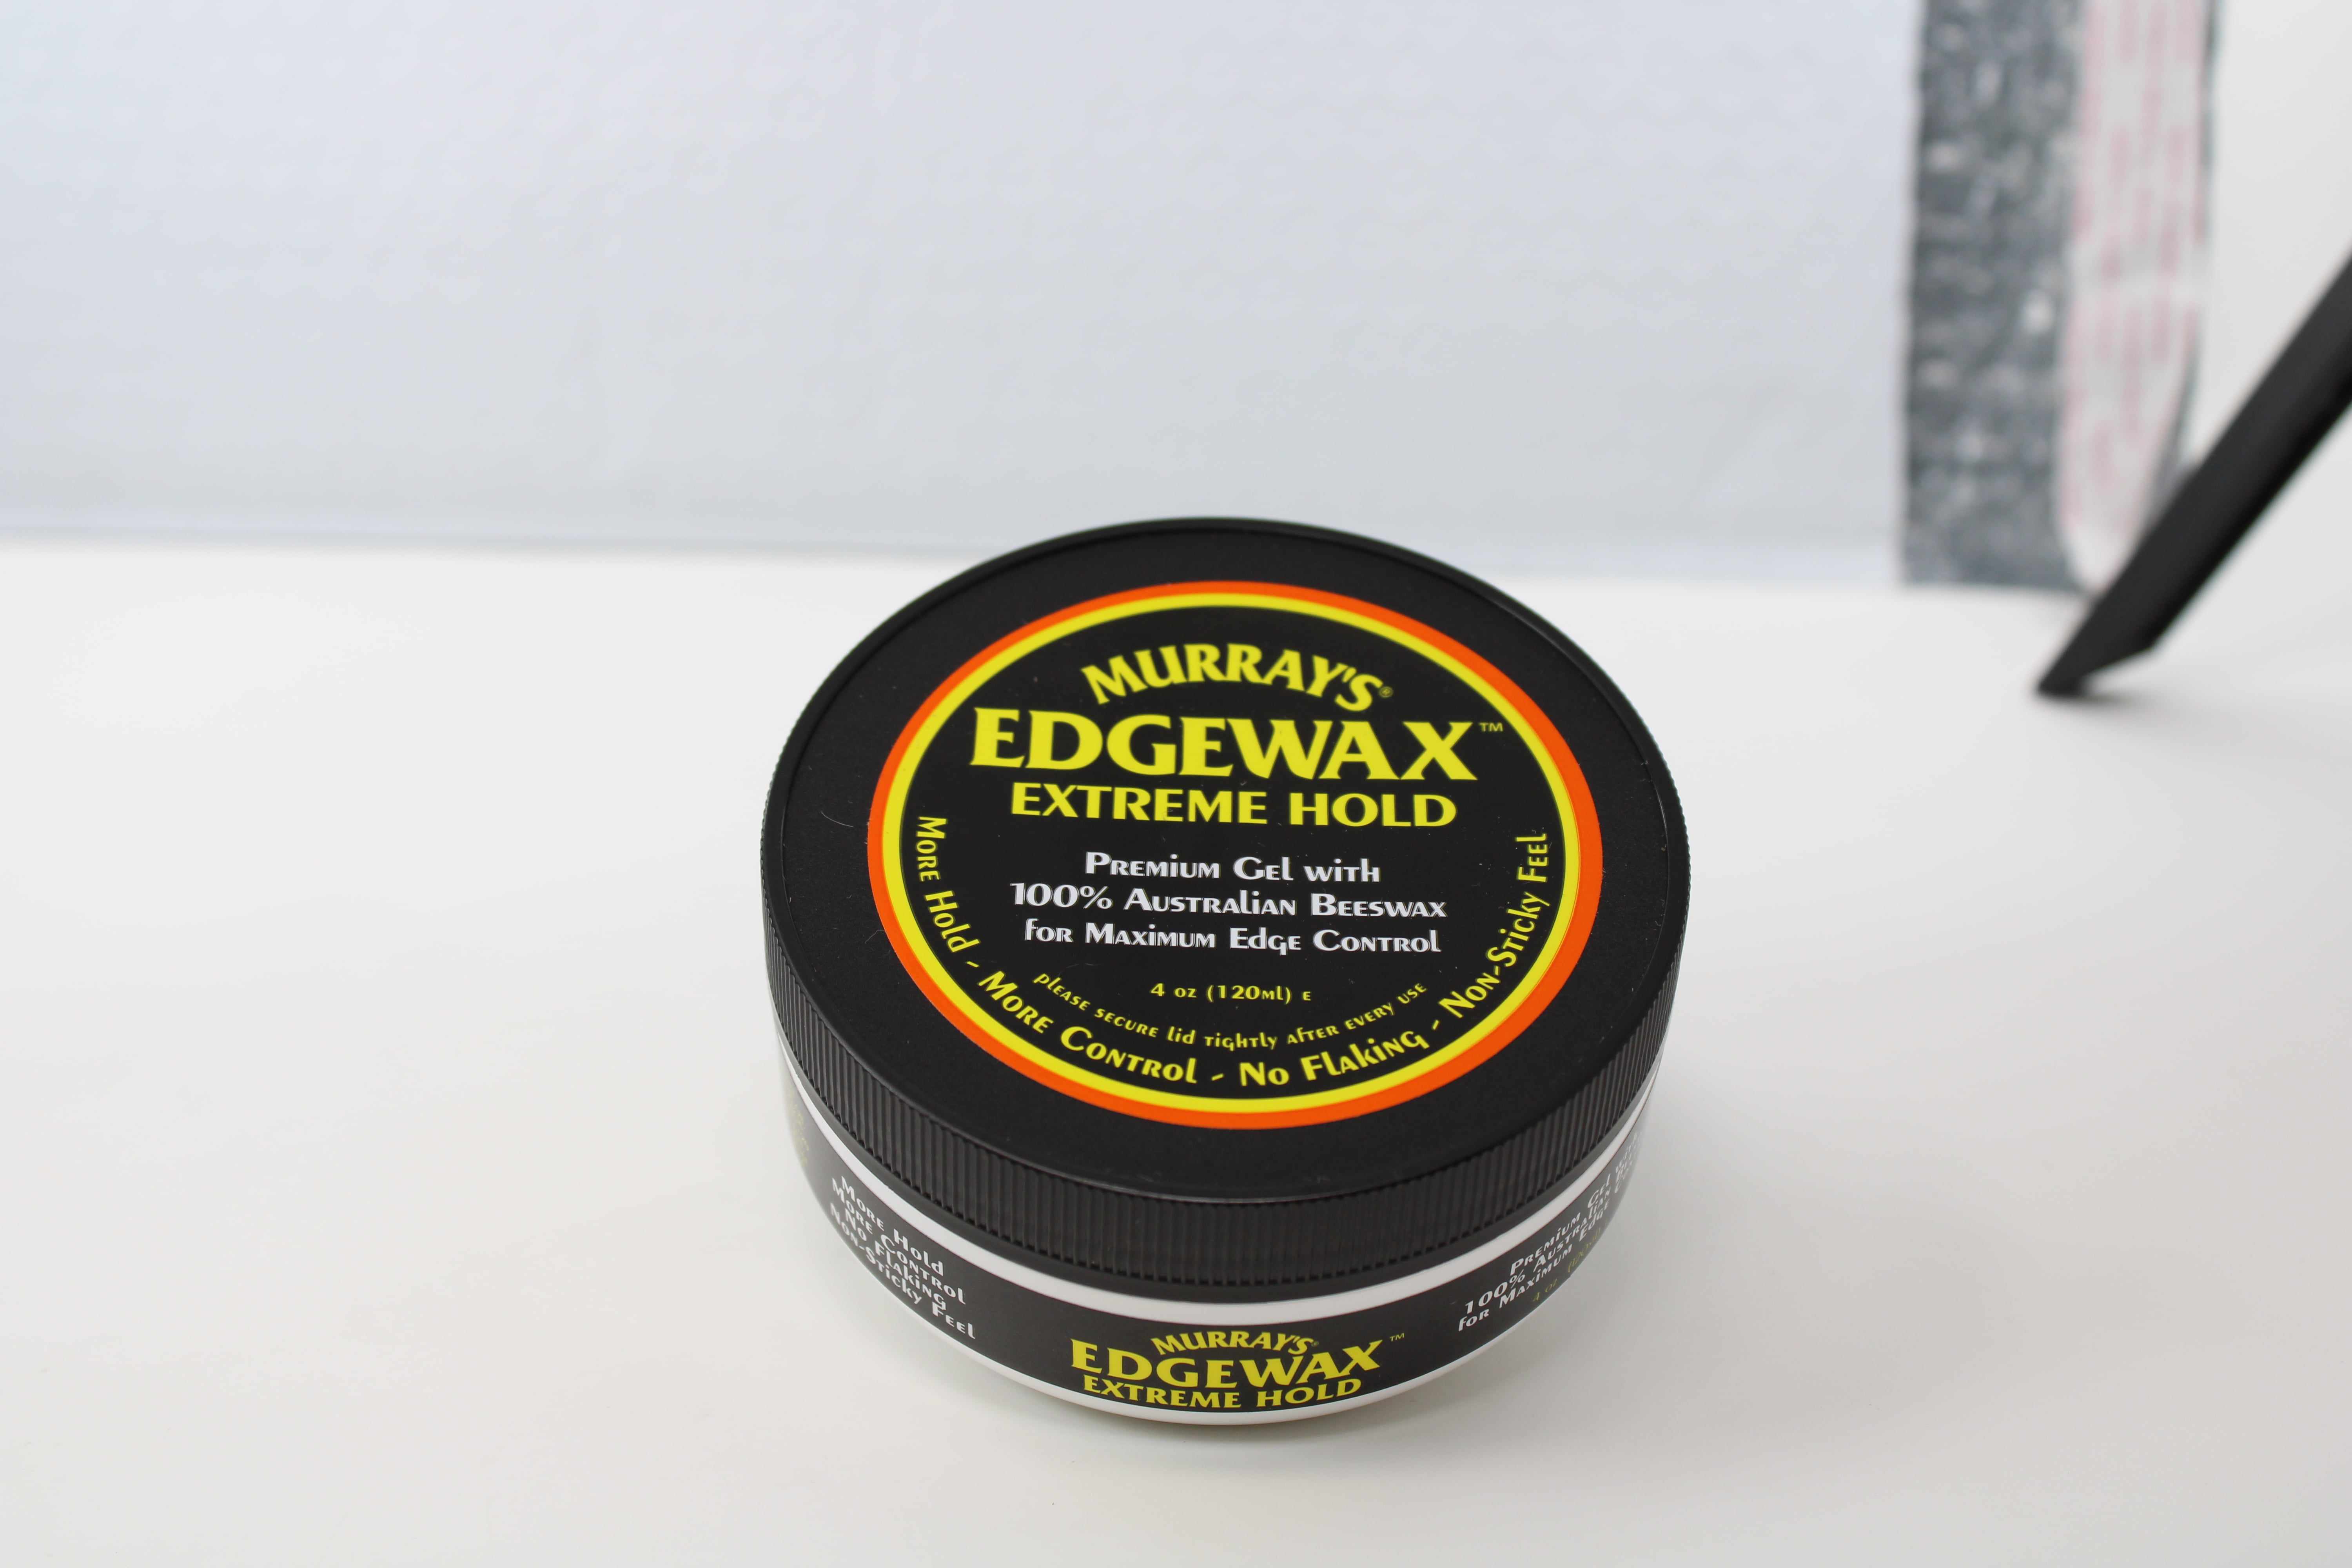 Murray's Edgewax Premium Gel (.5 oz.) - NaturallyCurly